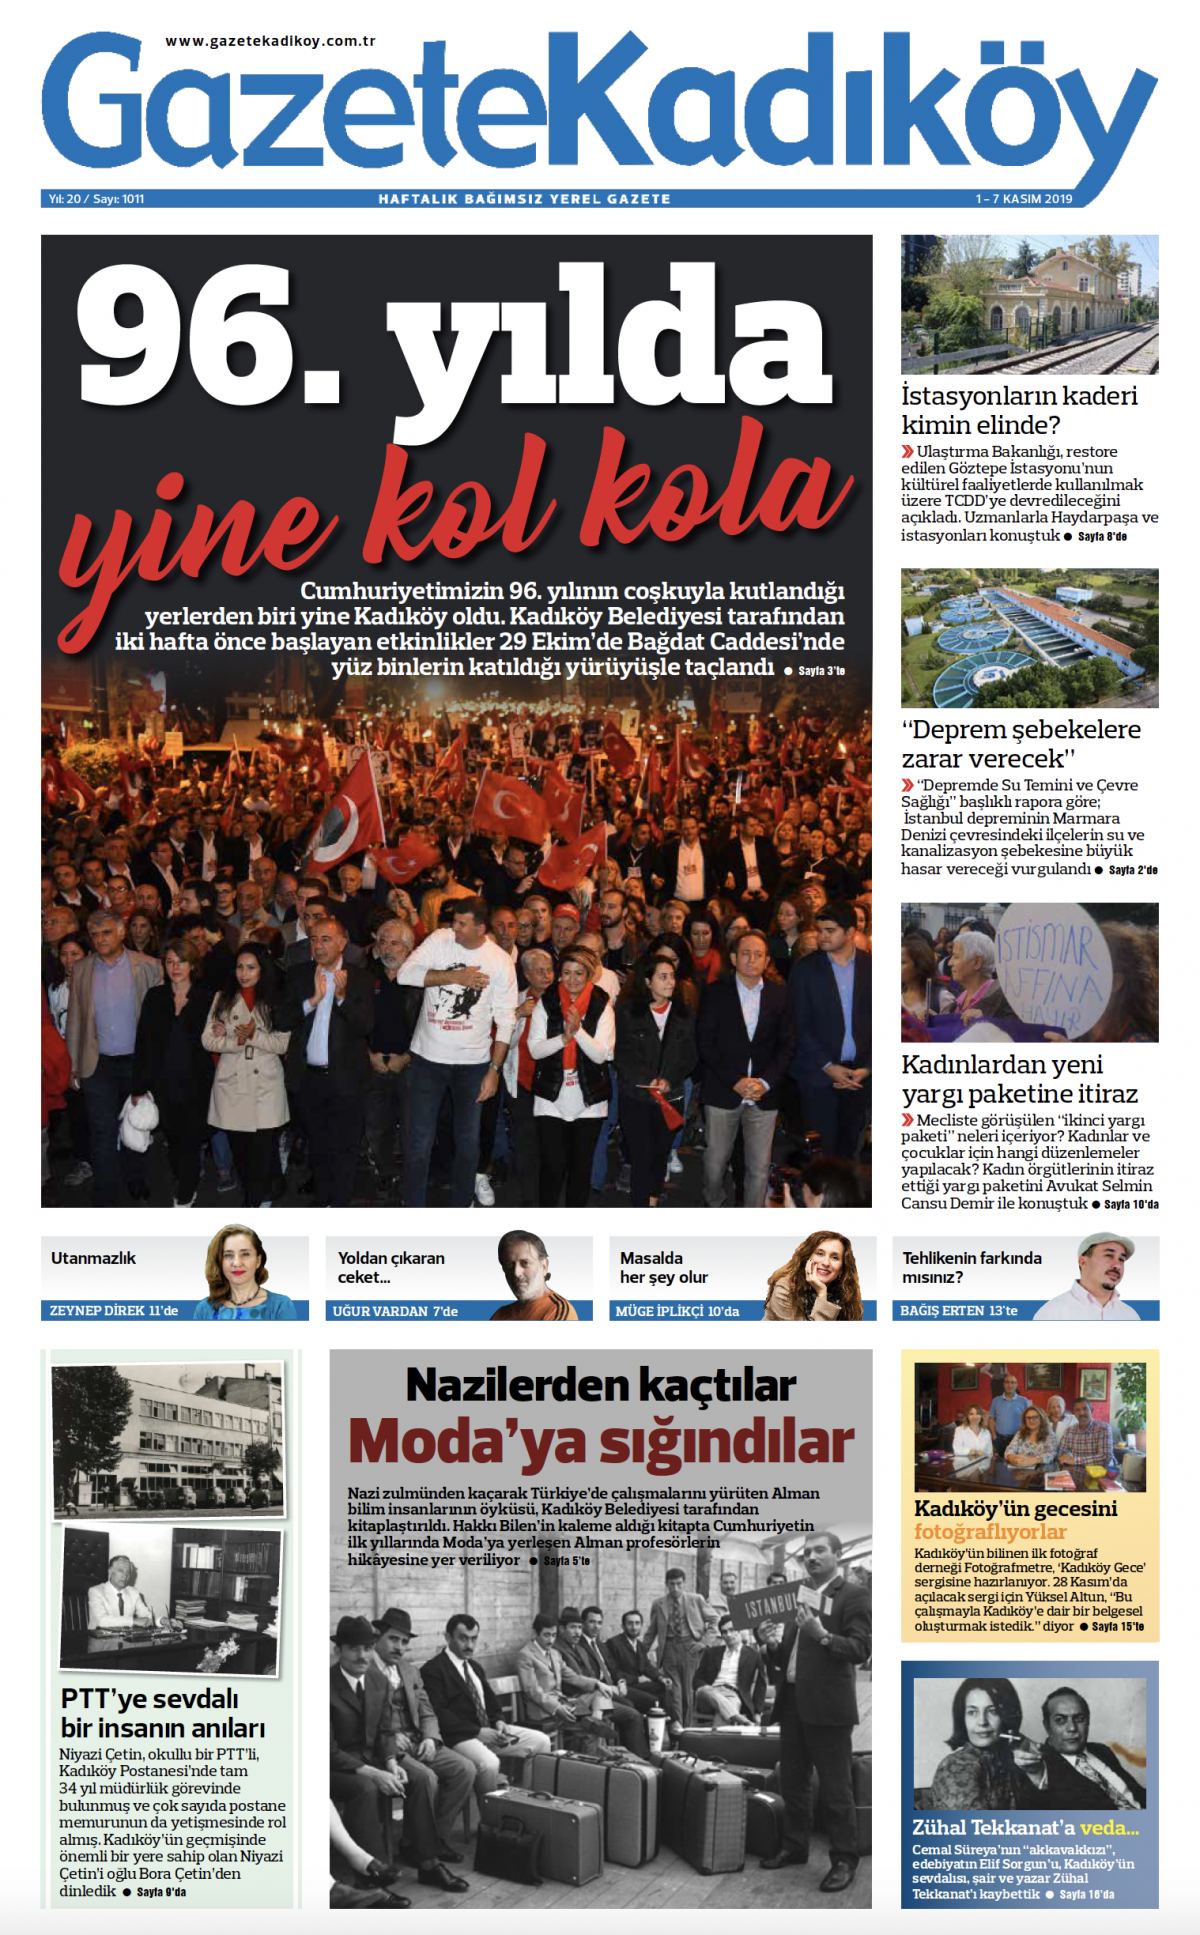 Gazete Kadıköy - 1011. Sayı